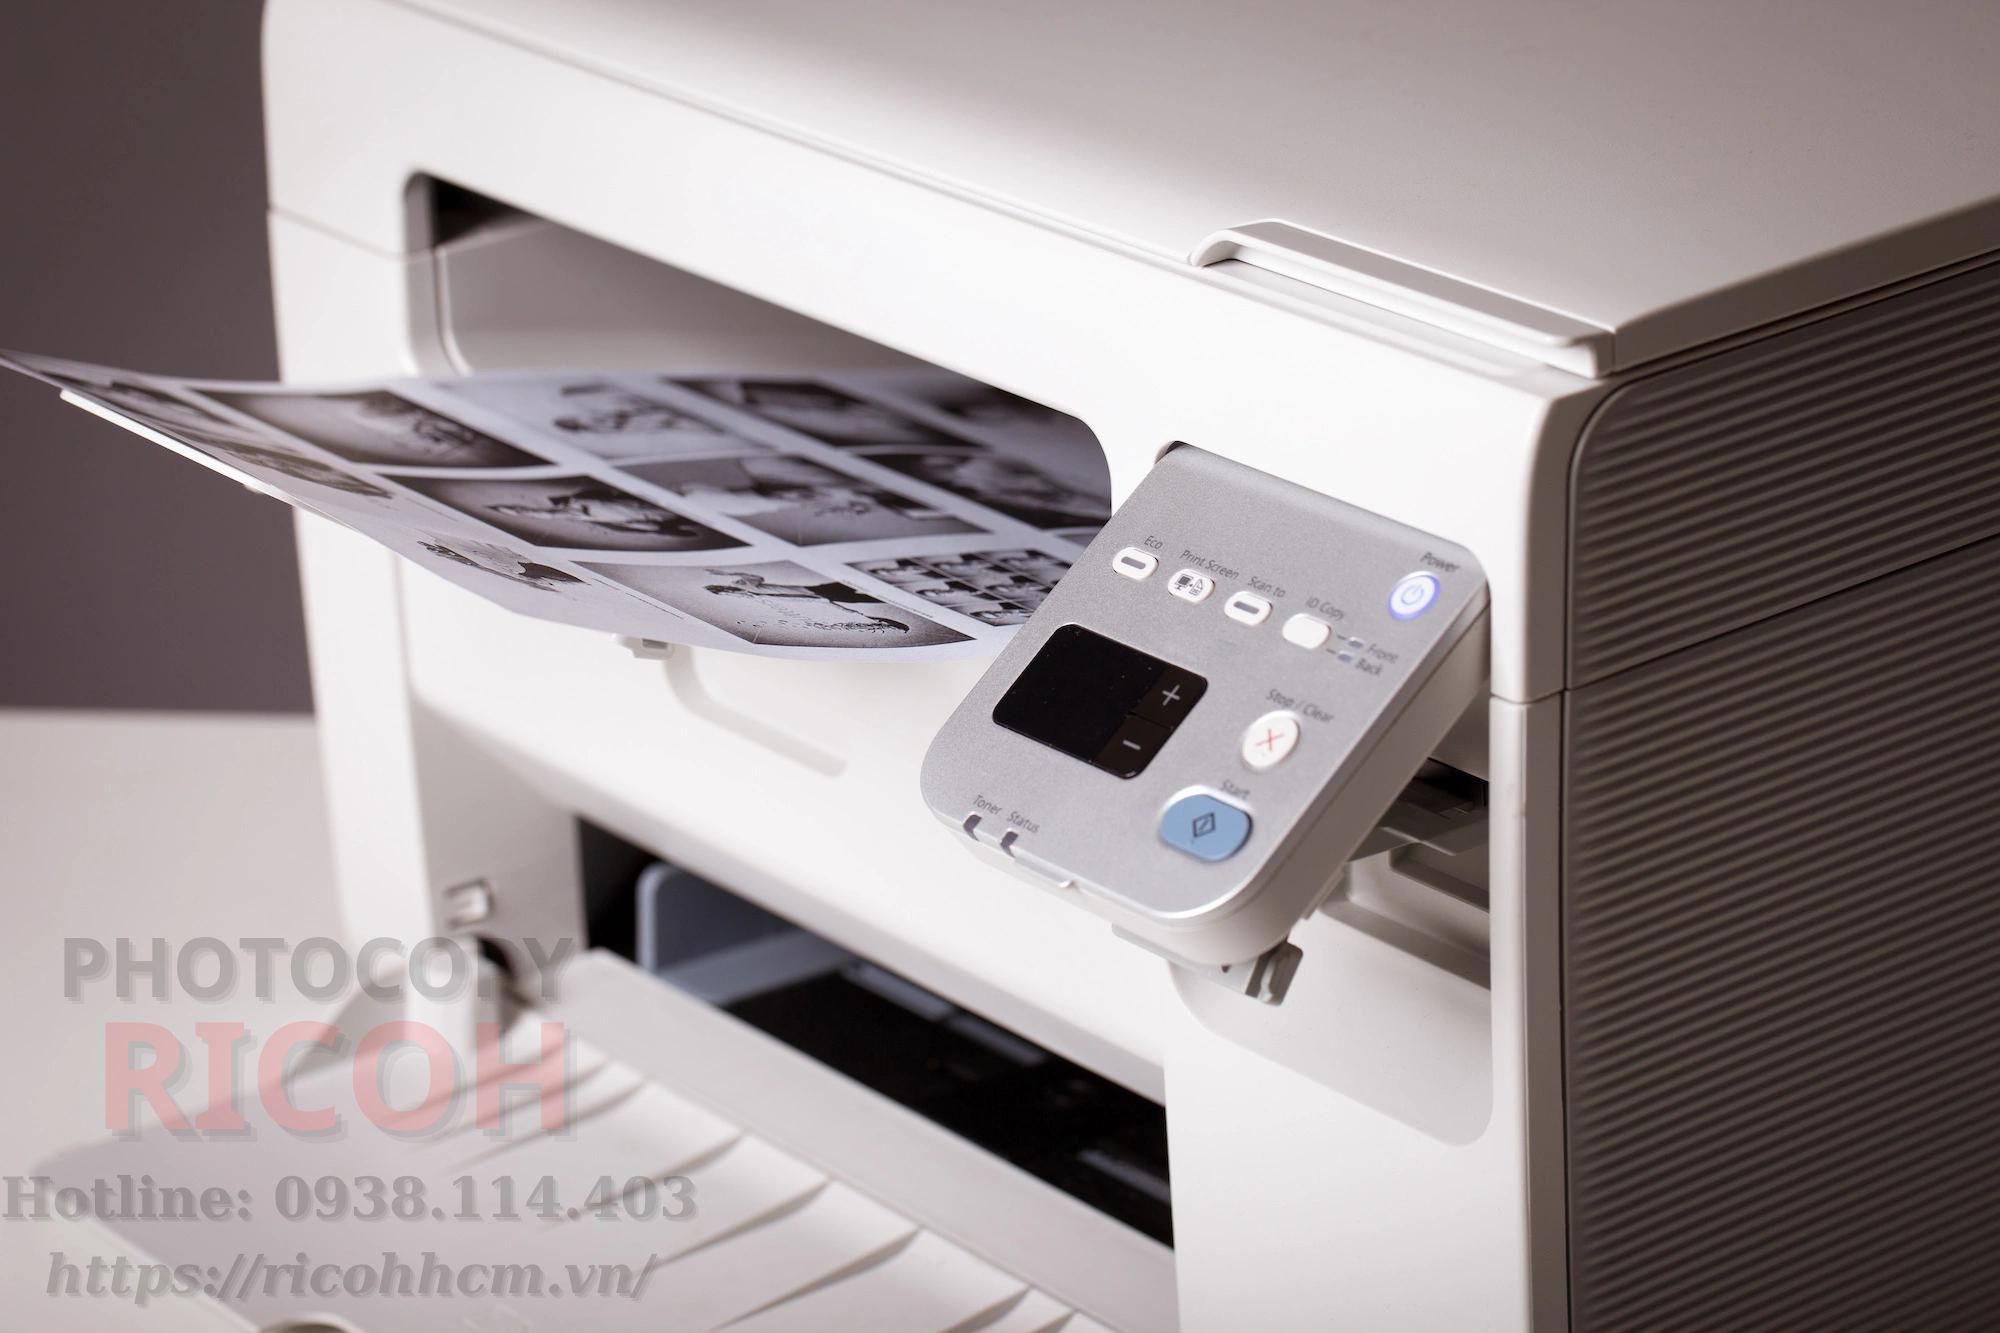 Máy in và máy photocopy khác nhau như thế nào : máy in là thiết bị chuyên dùng để tạo ra các ấn phẩm in ấn.